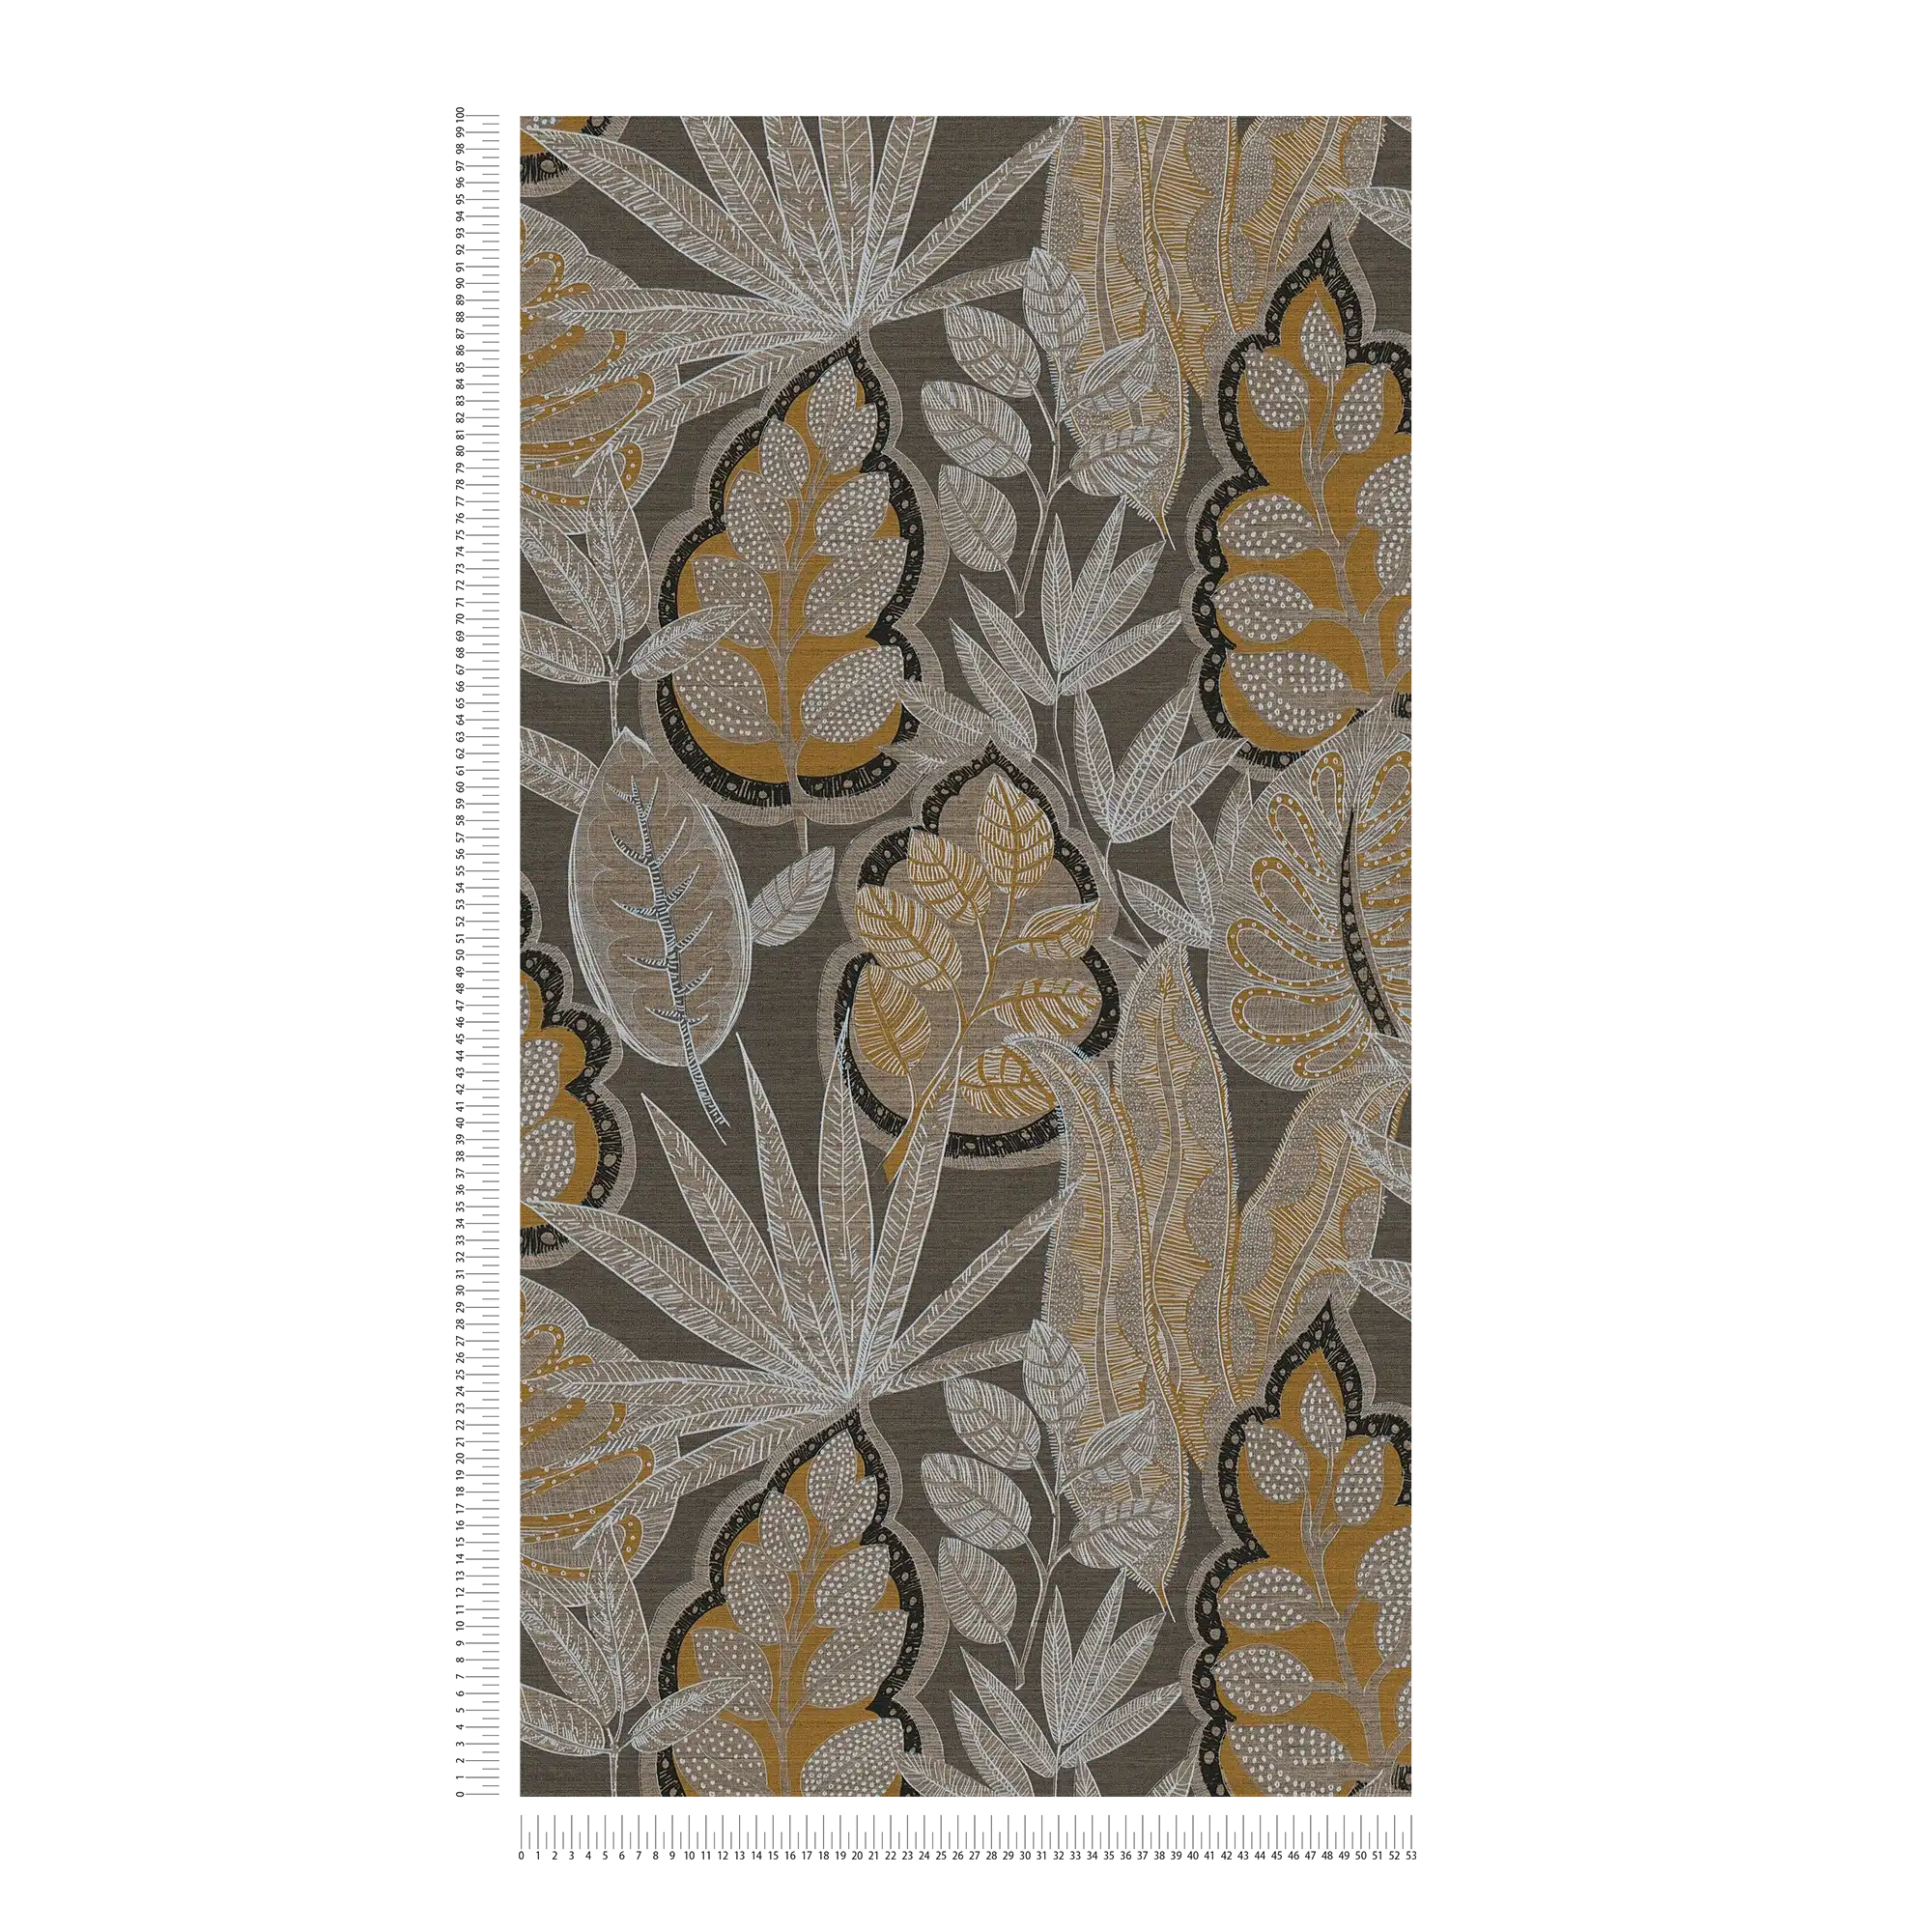             papier peint en papier floral de style graphique à texture légère, mat - marron, orange, blanc
        